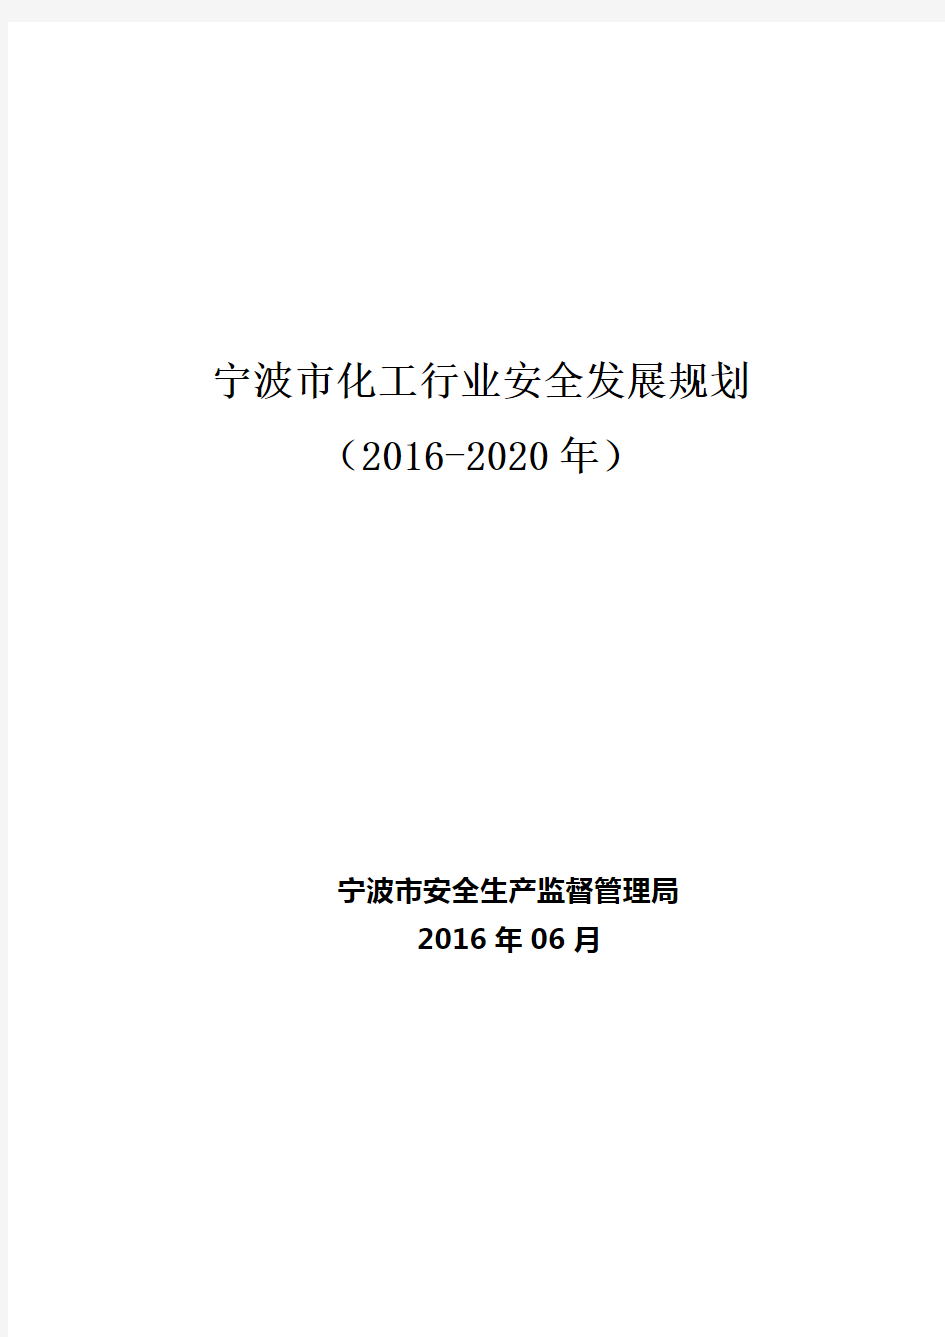 宁波市化工行业安全发展规划(2016-2020年)